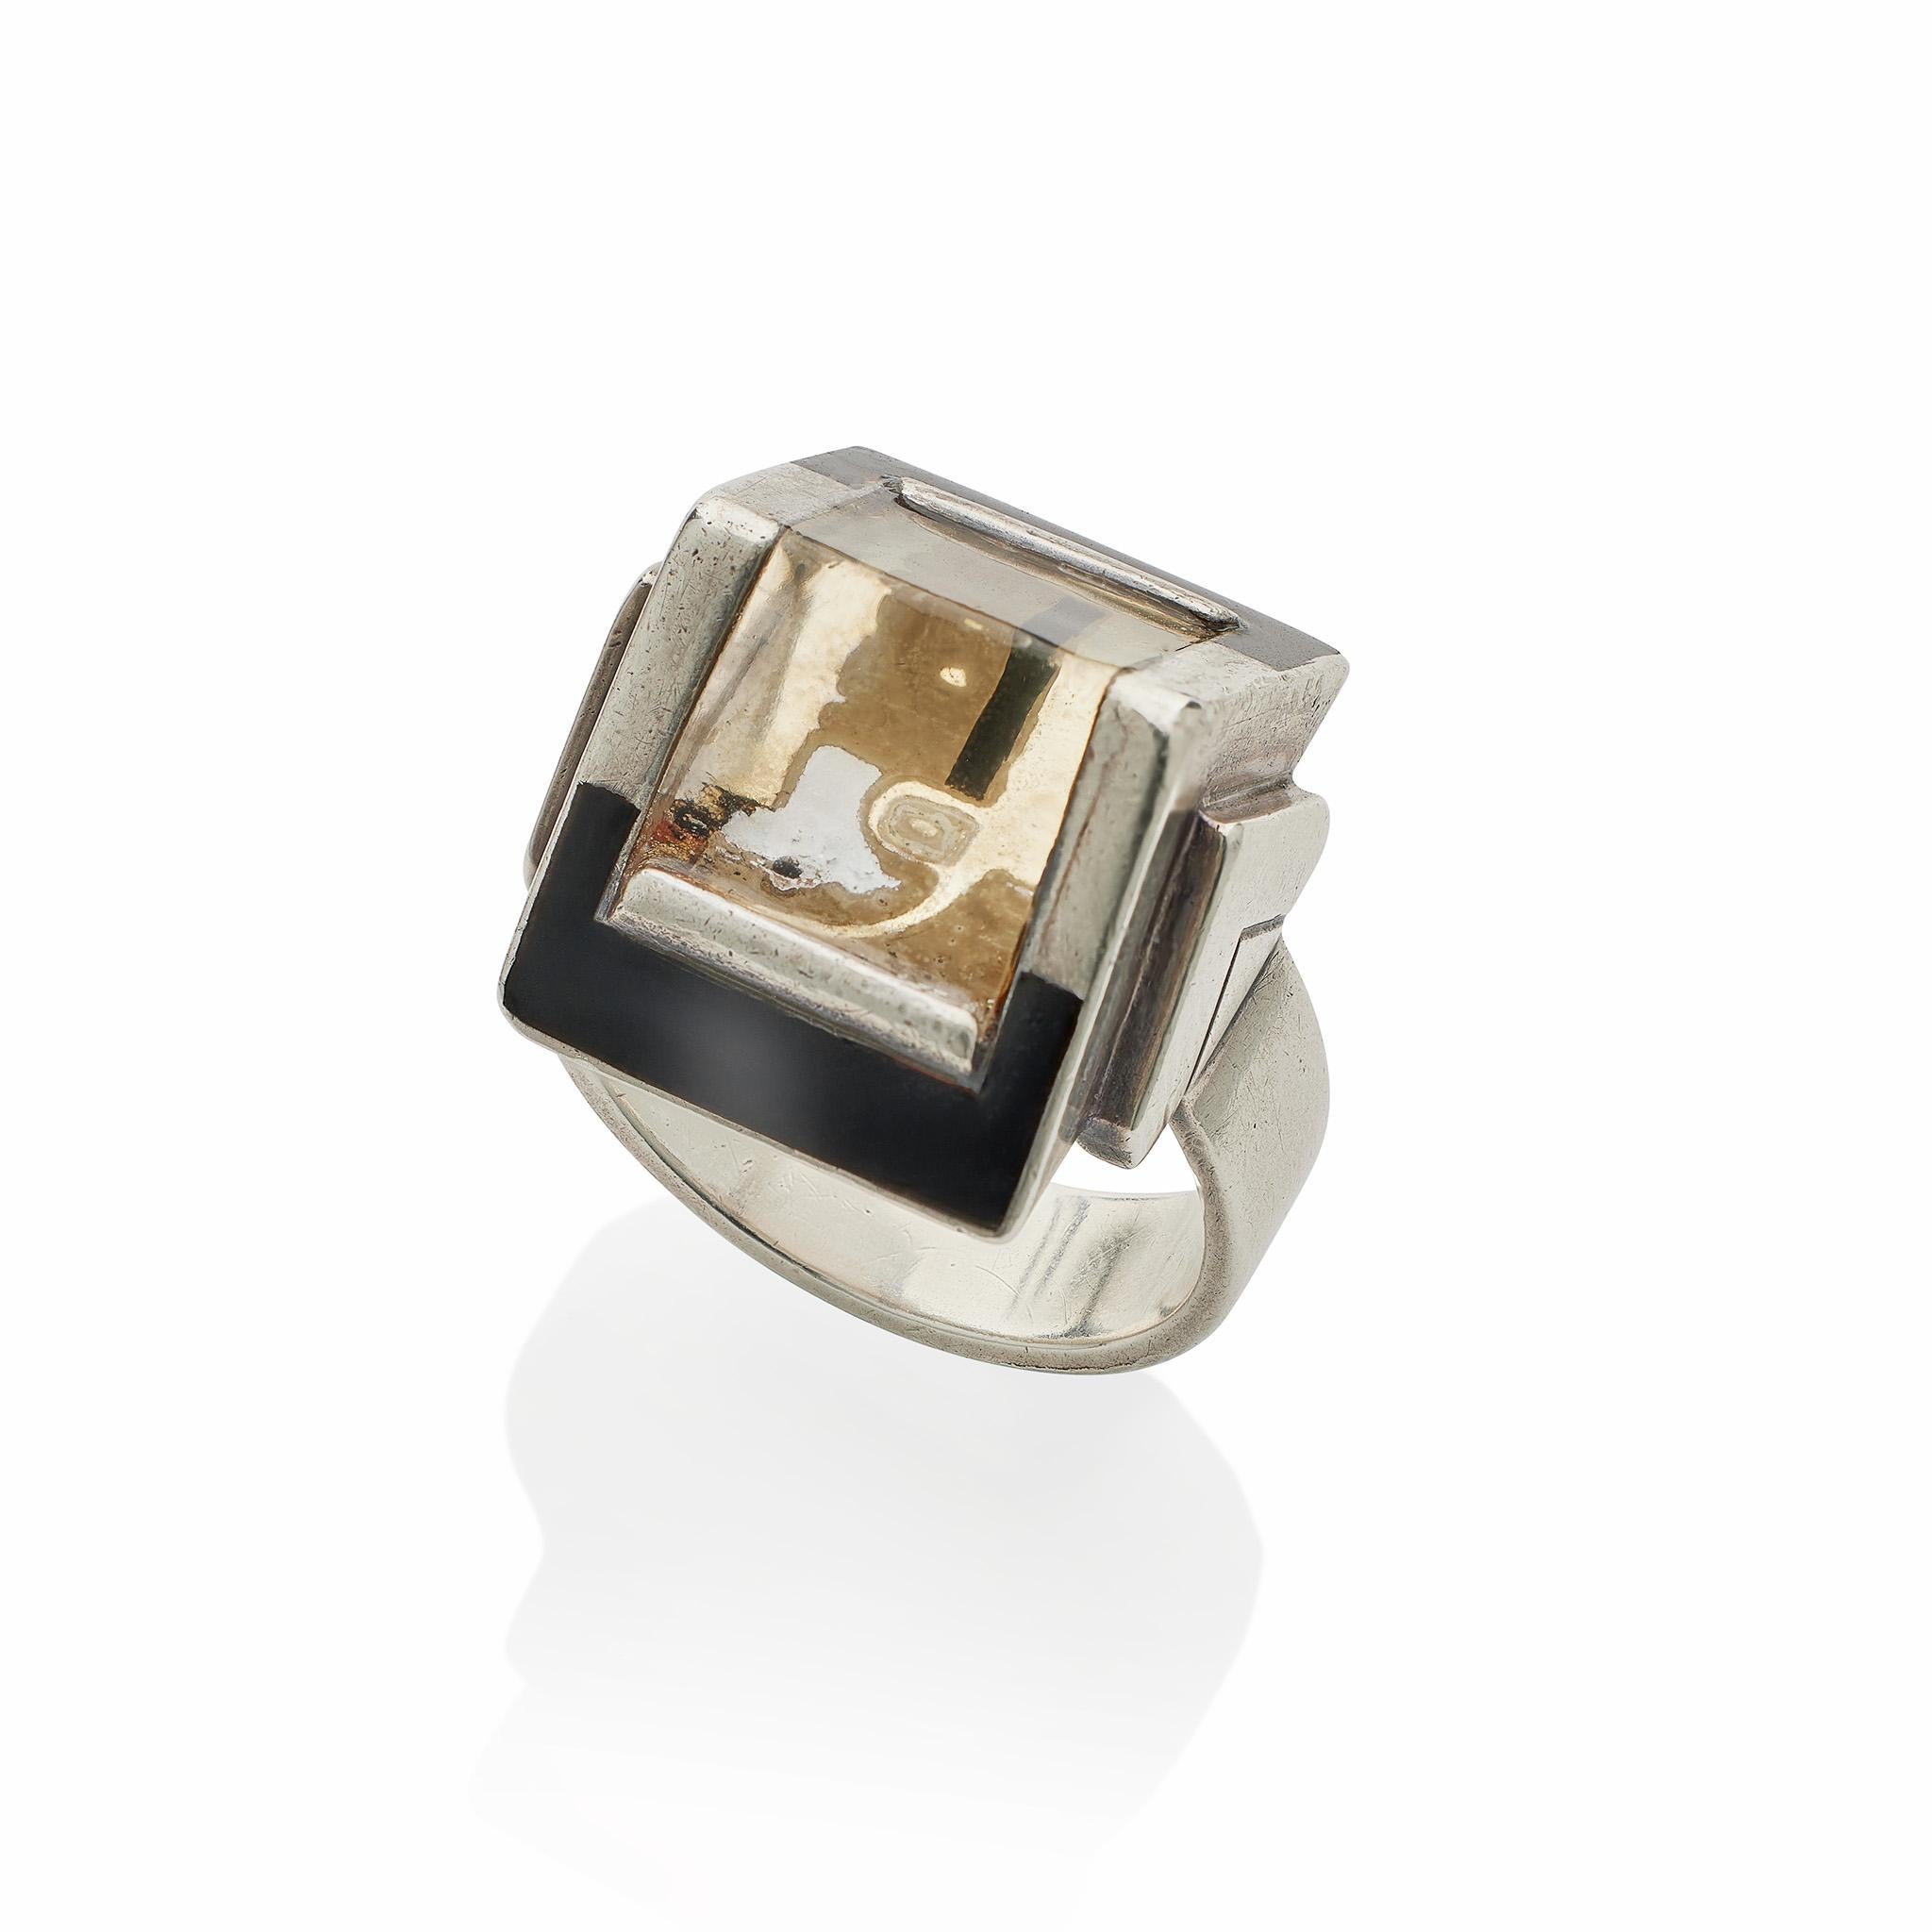 Dieser außergewöhnliche Ring aus Silber, Lack und rückseitig bemaltem und graviertem Kristall ist eine Collaboration der beiden französischen Künstler der Moderne, Després und Cornault. In der Mitte des Rings befindet sich ein Prisma aus